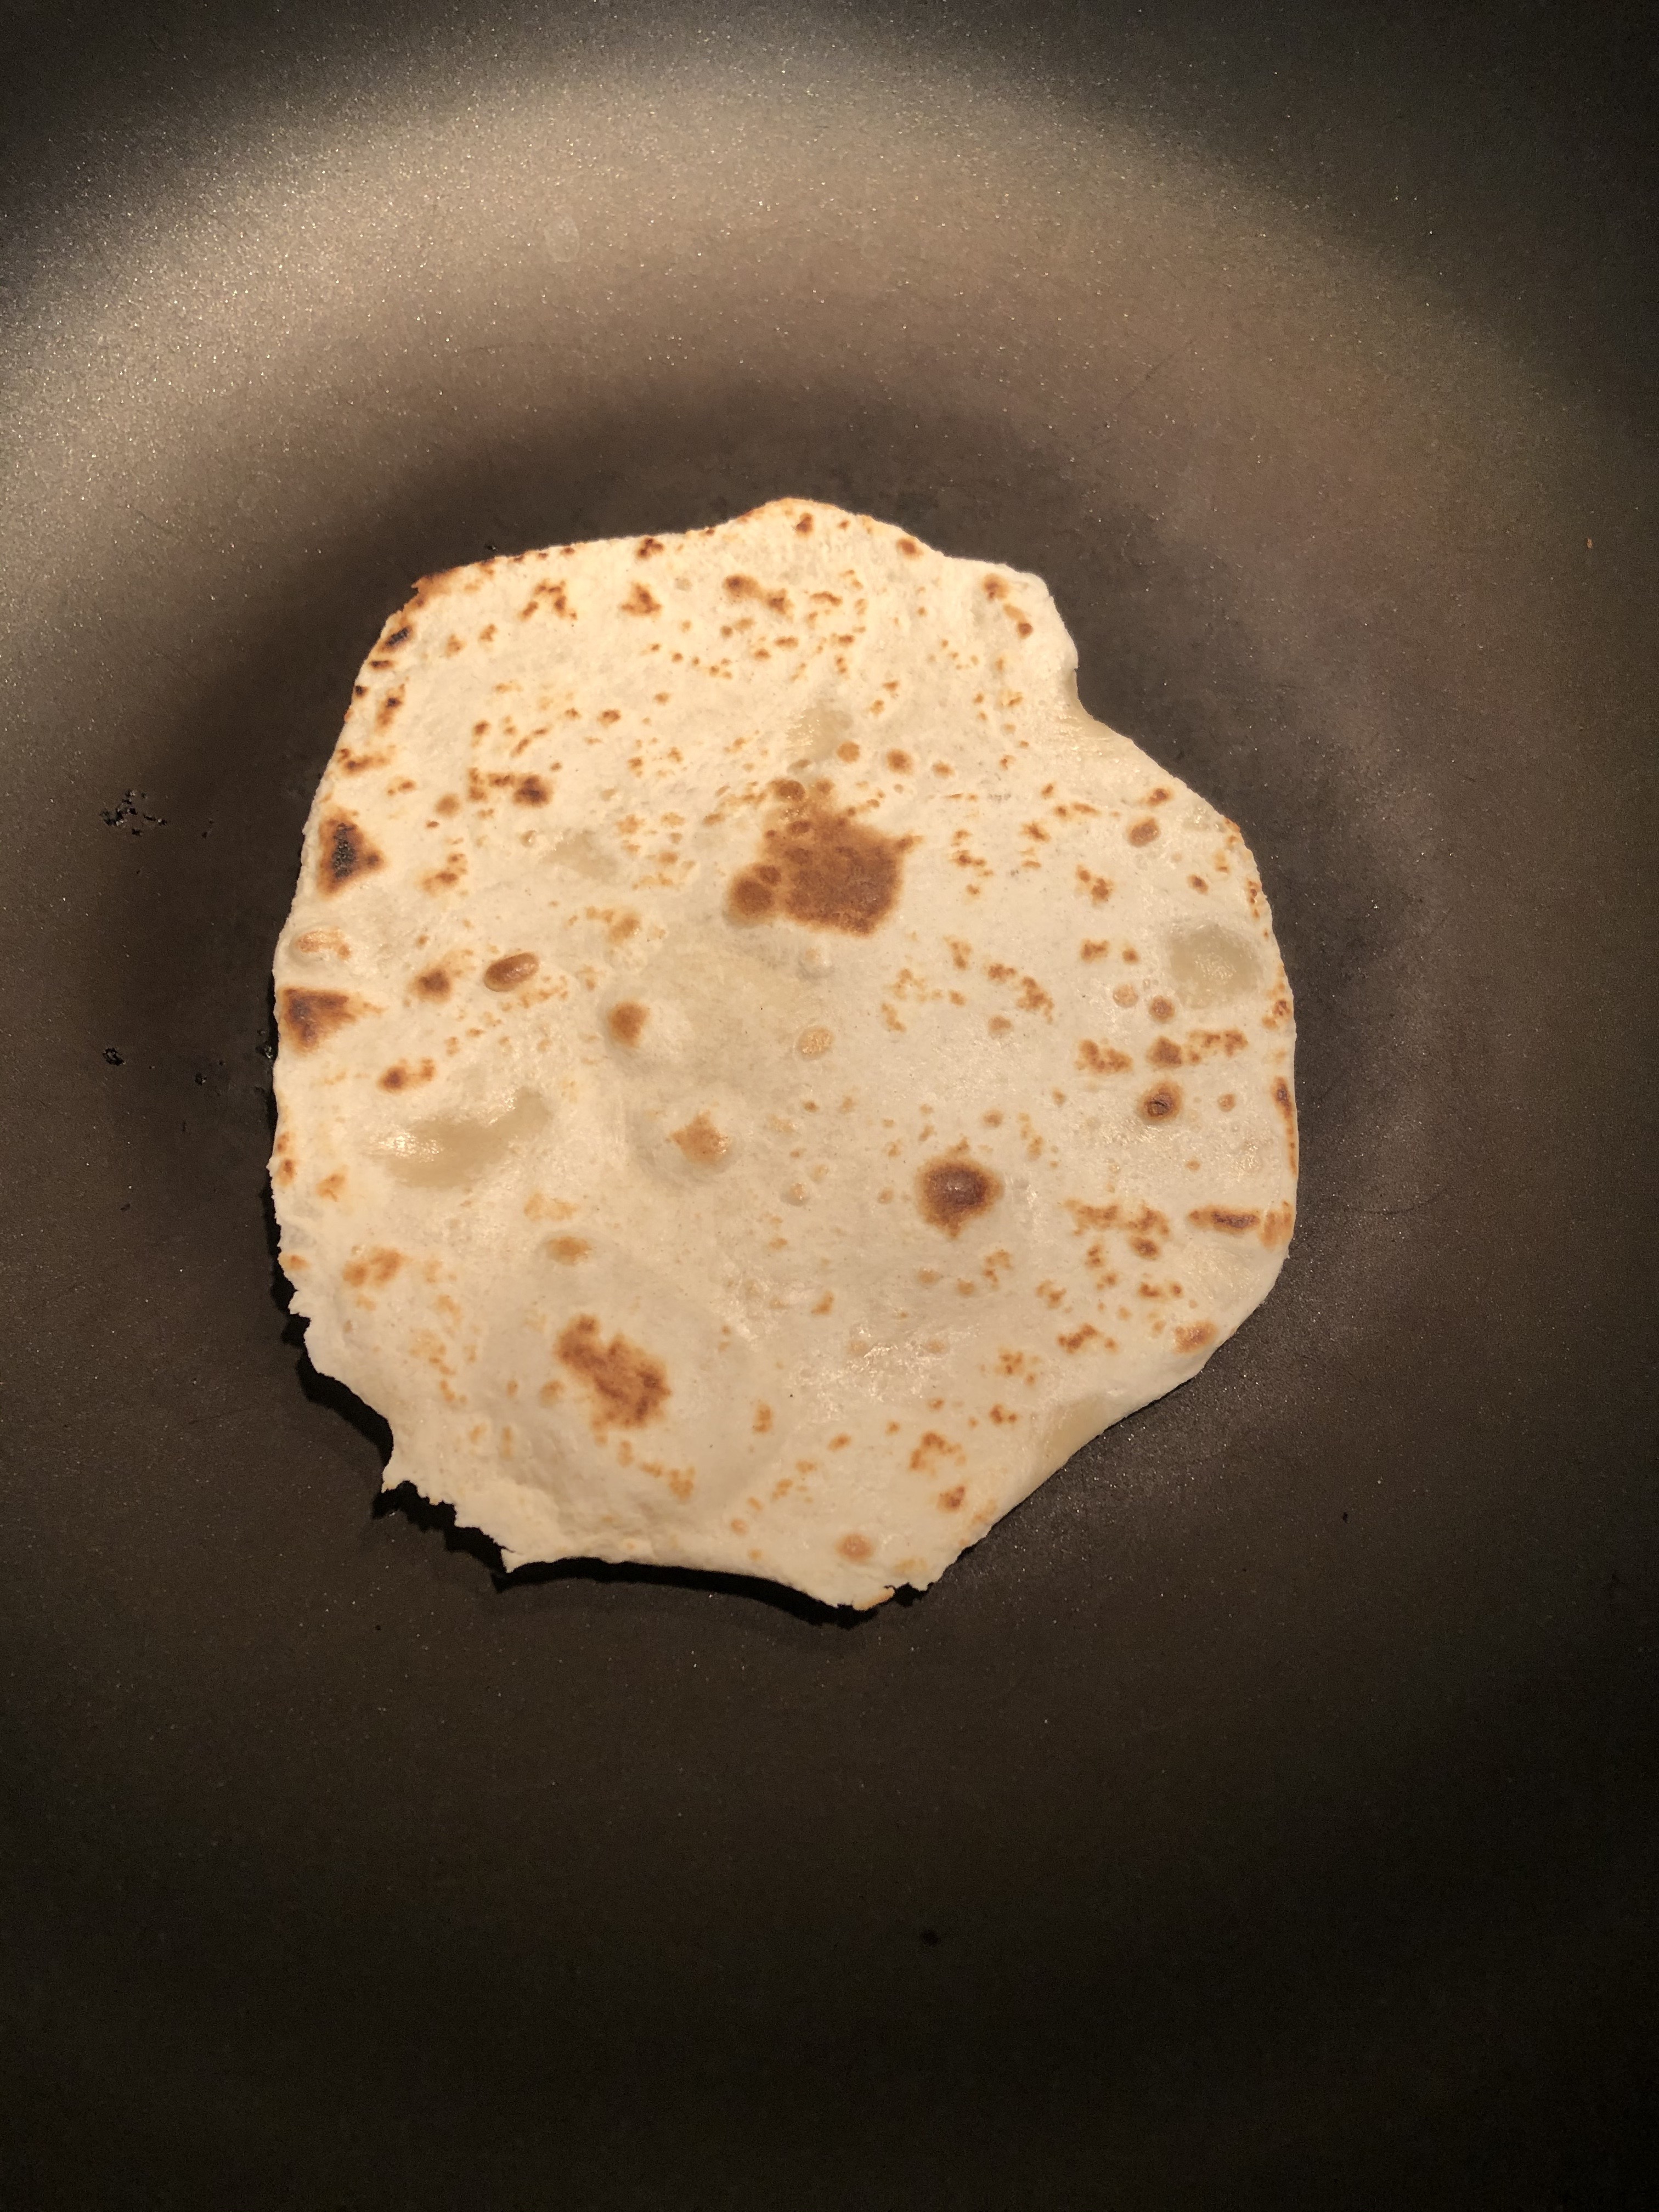 My first tortilla